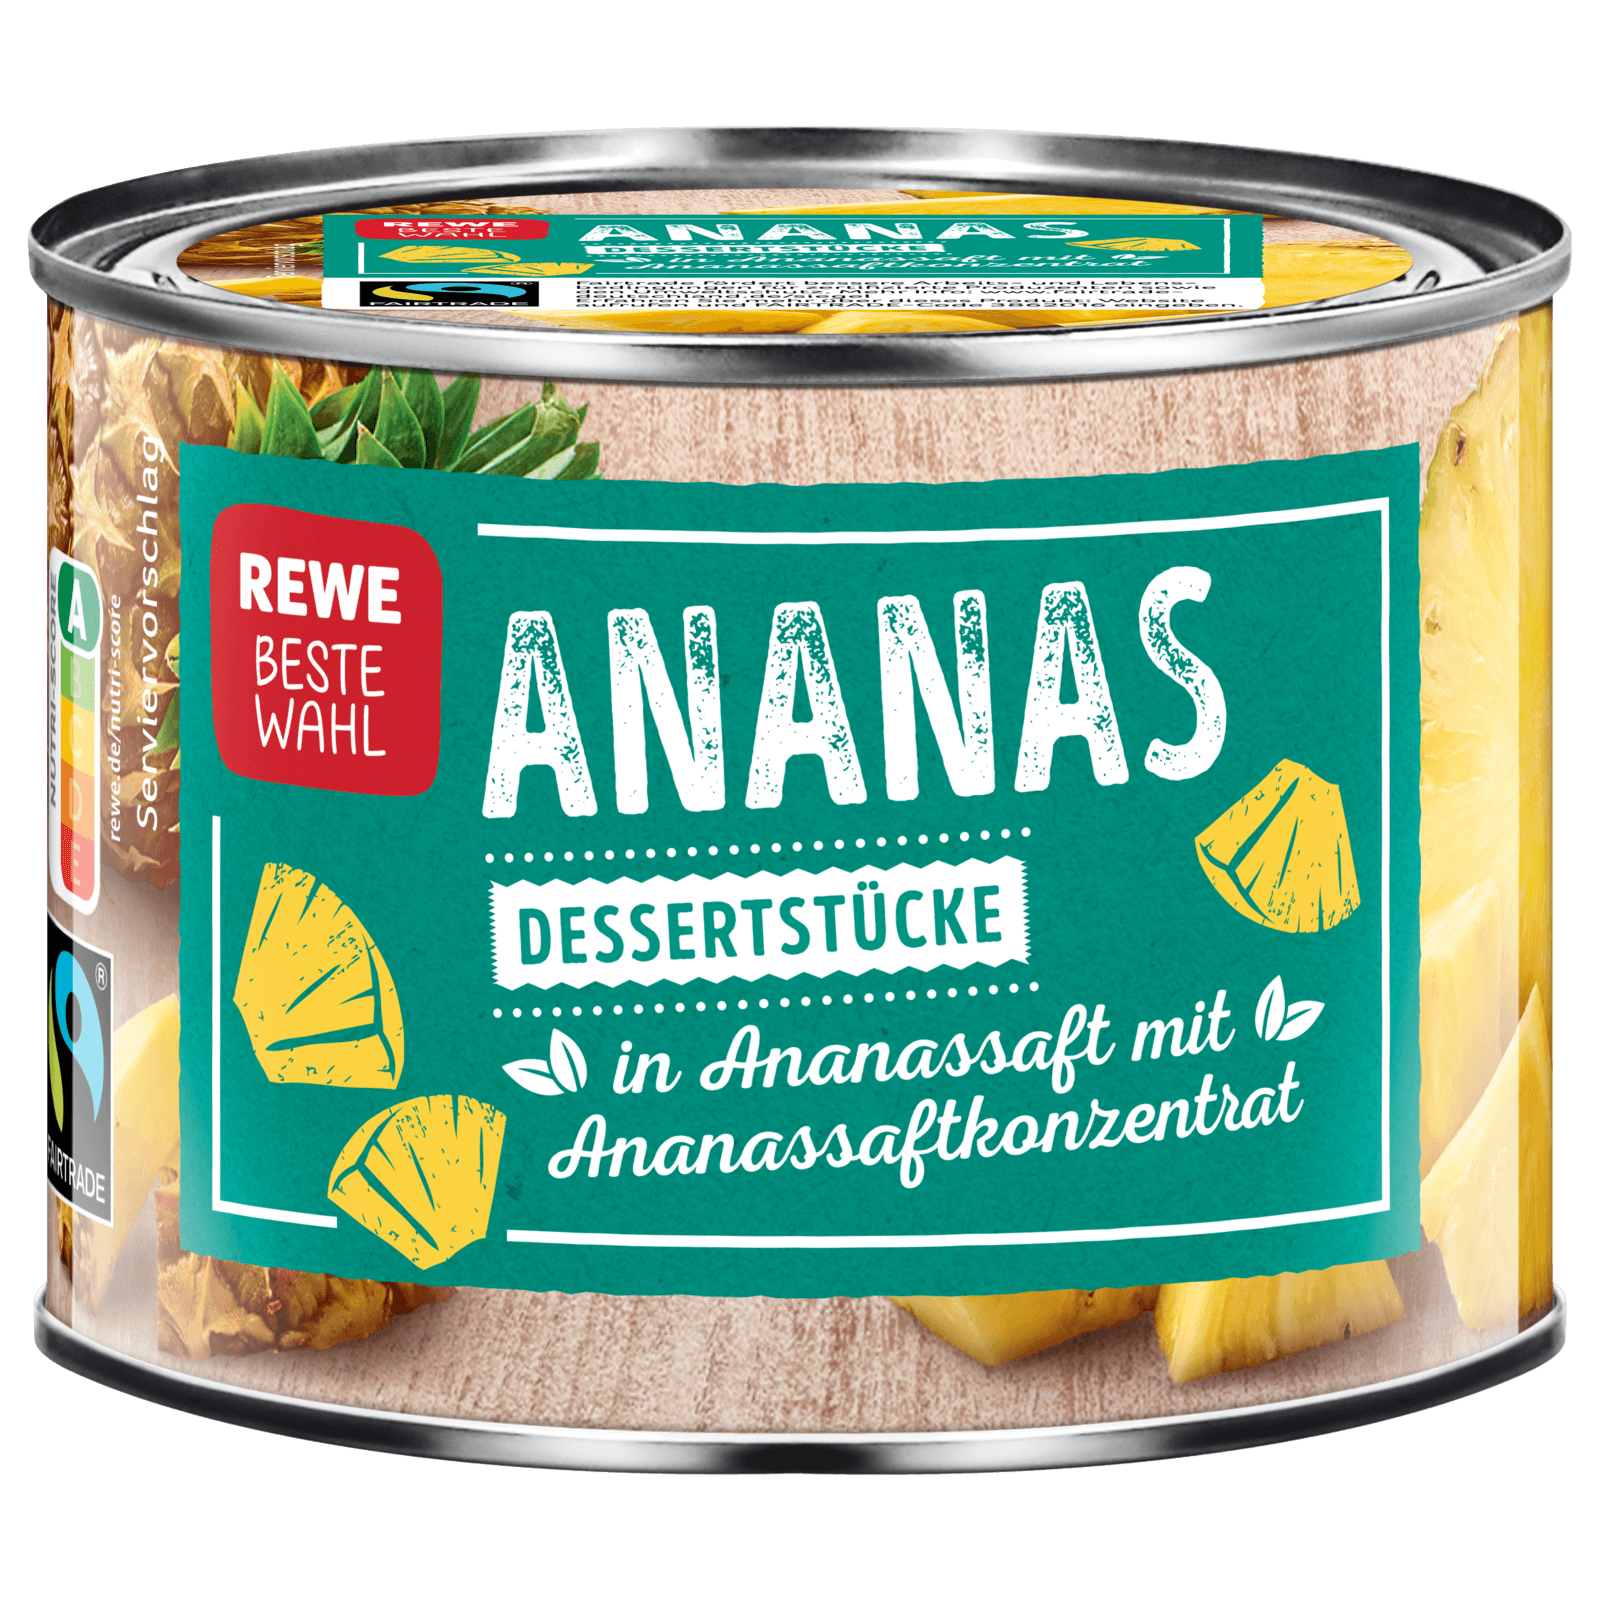 REWE Beste Wahl Ananasstücke 142g  für 1.99 EUR